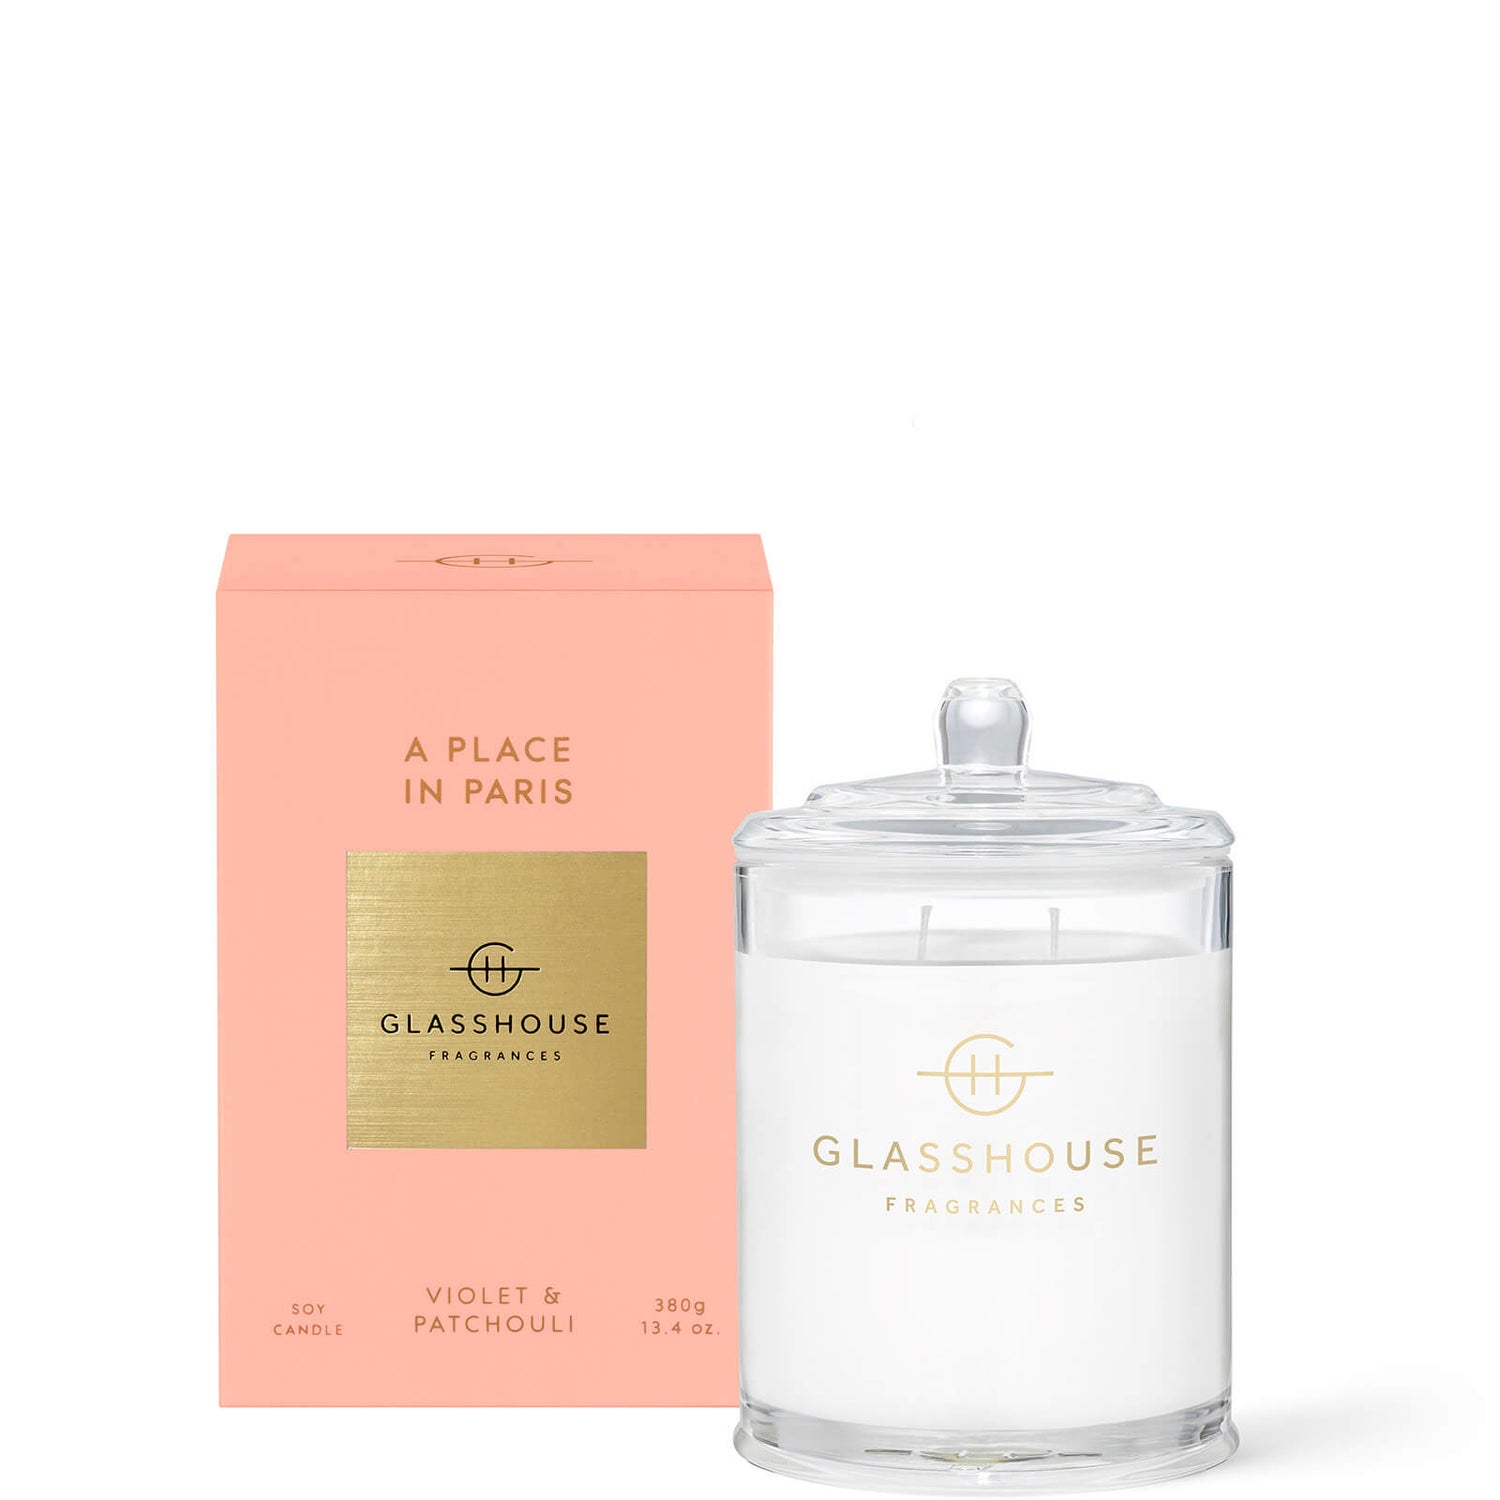 Glasshouse Fragrances A Place in Paris Candle 380g